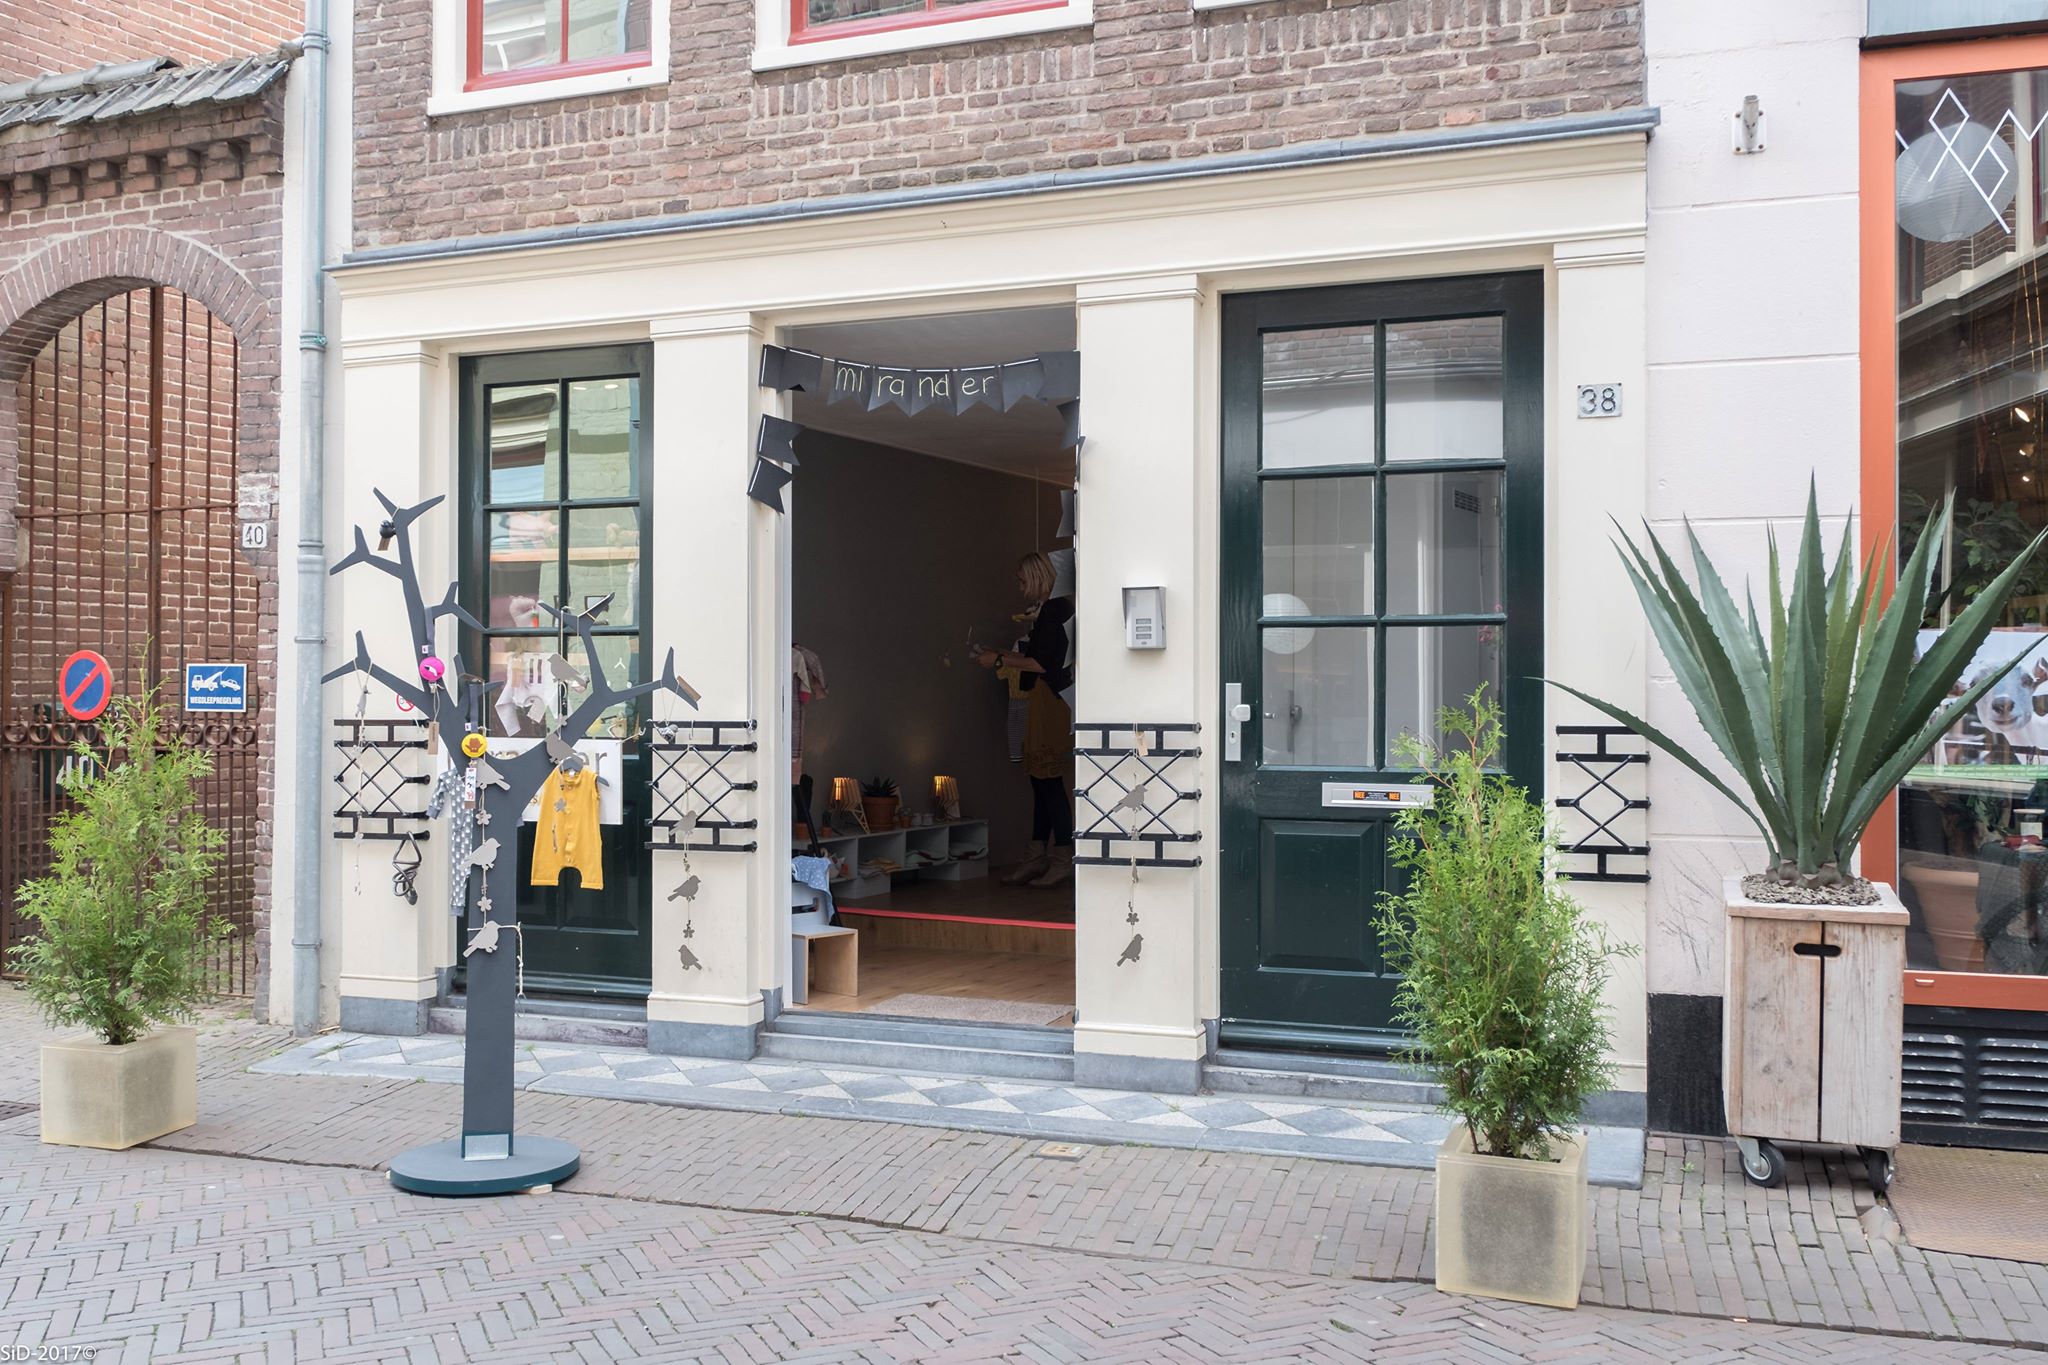 Mirander en meer winkels vind je bij Shoppen in Deventer